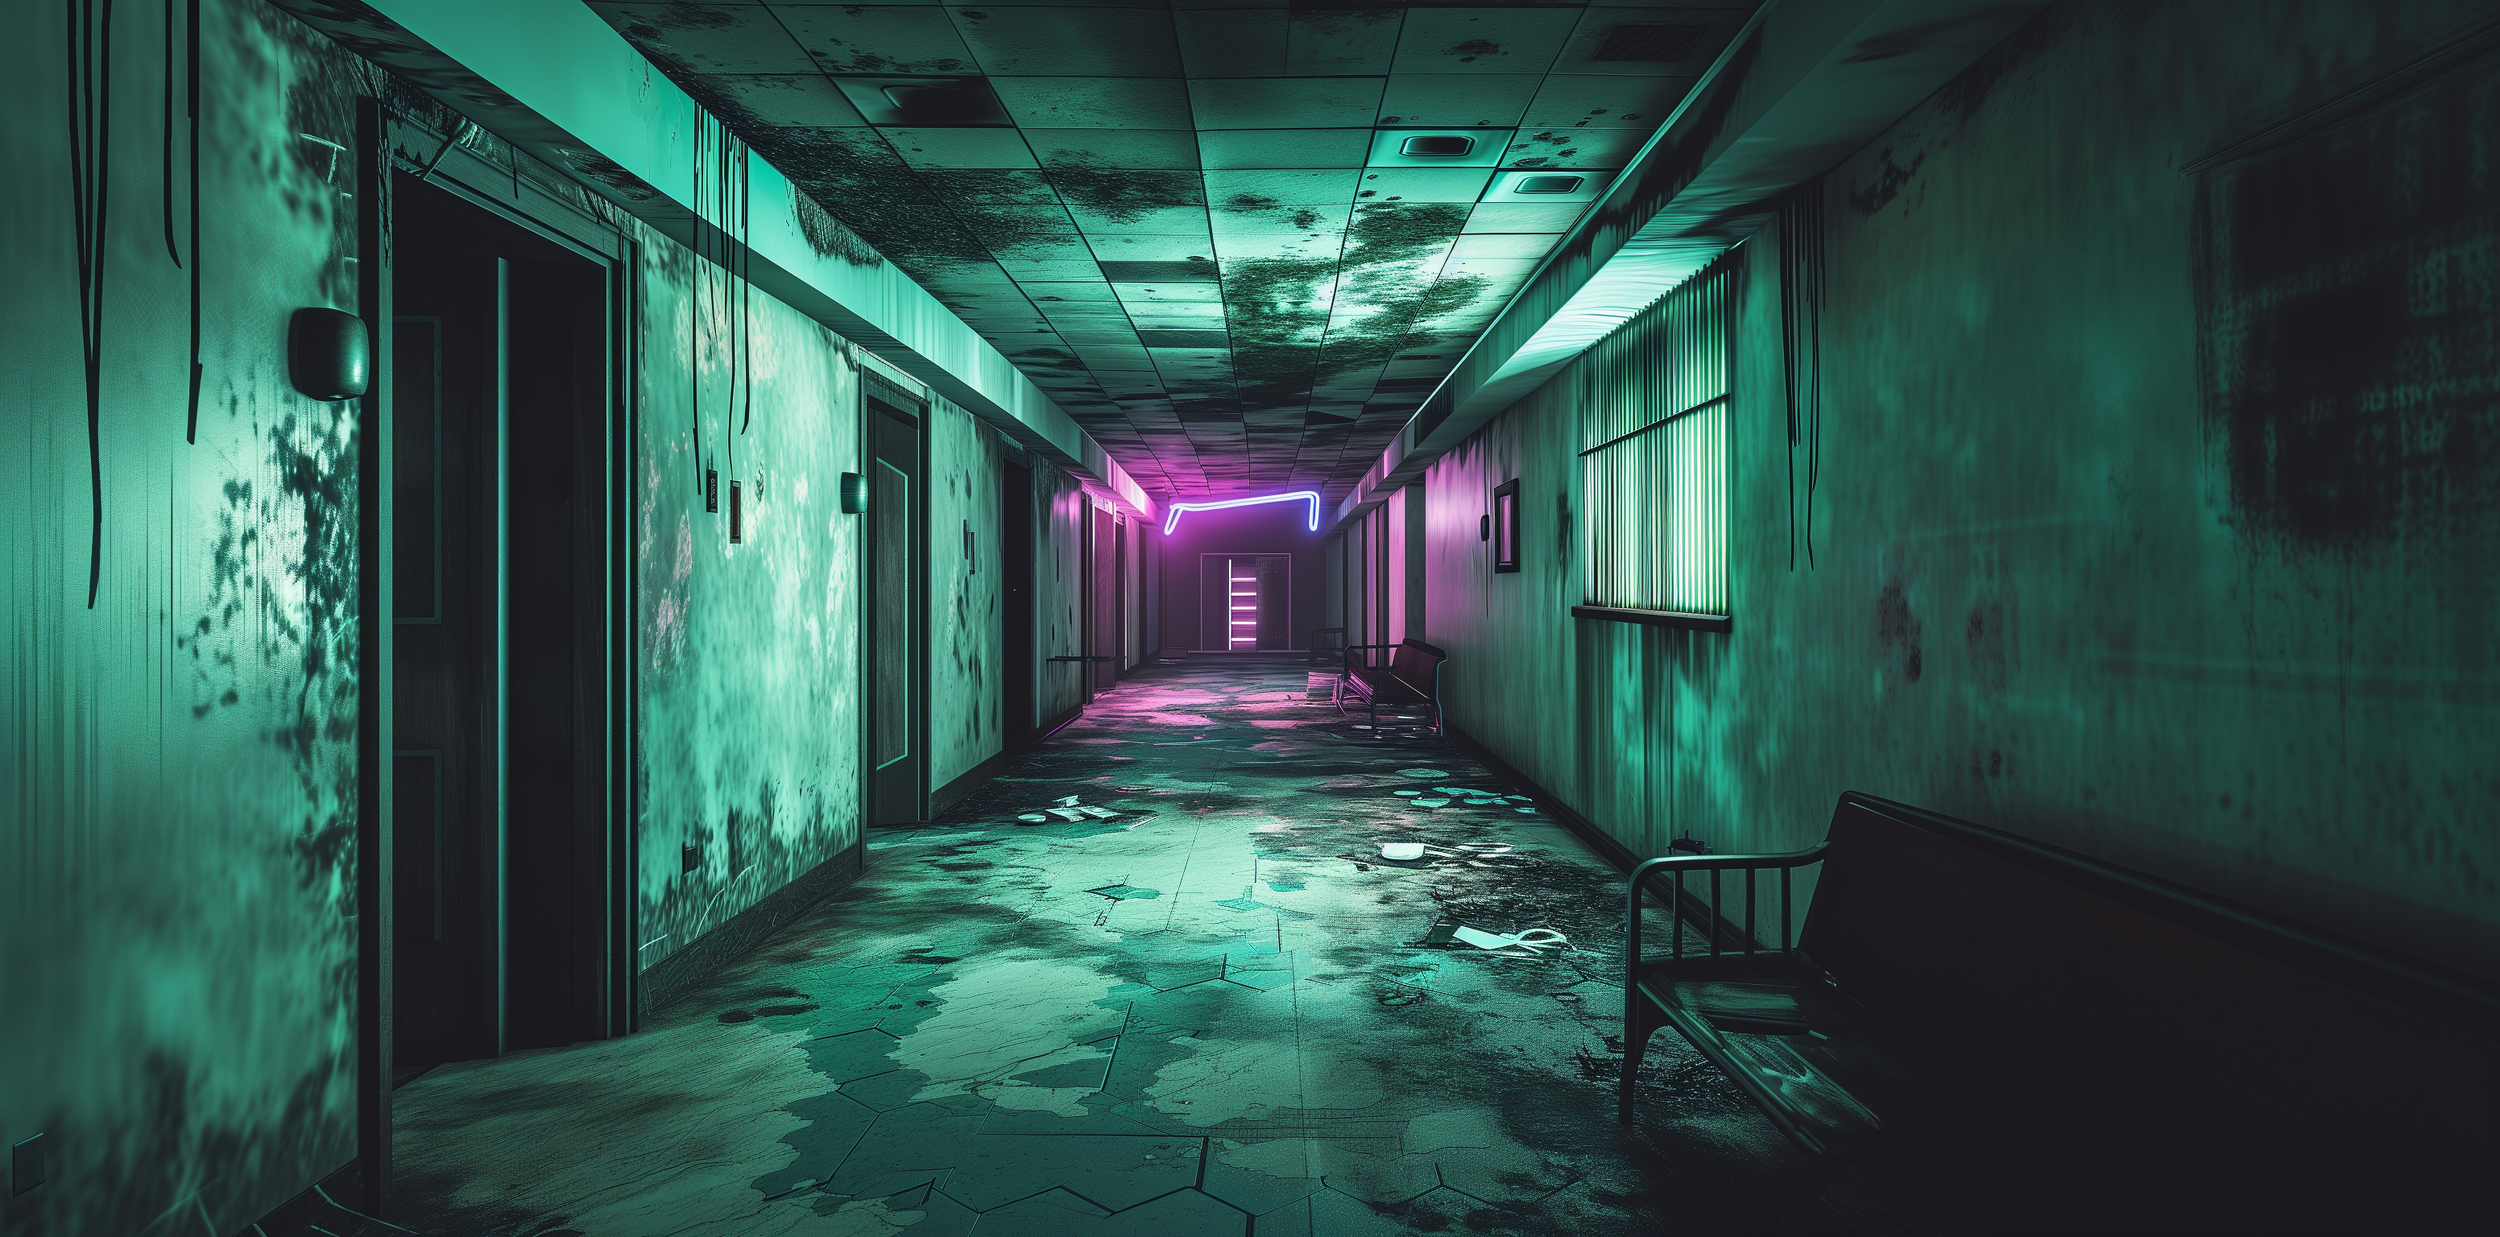 Hallway of Echoes - A Broken Future